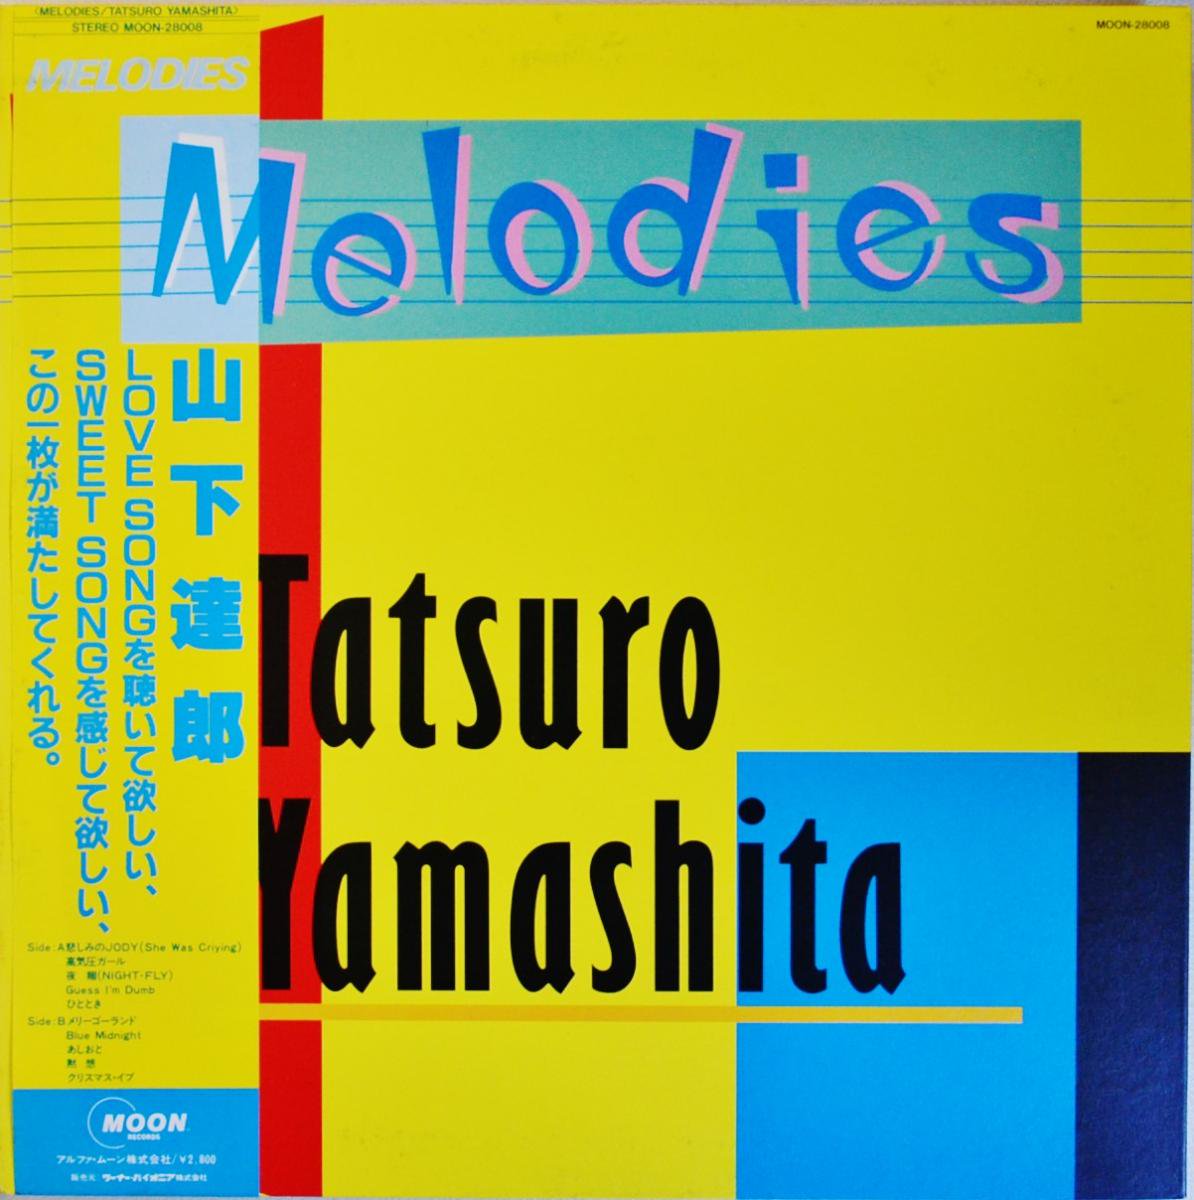 山下達郎 TATSURO YAMASHITA / メロディーズ MELODIES (LP) - HIP TANK 